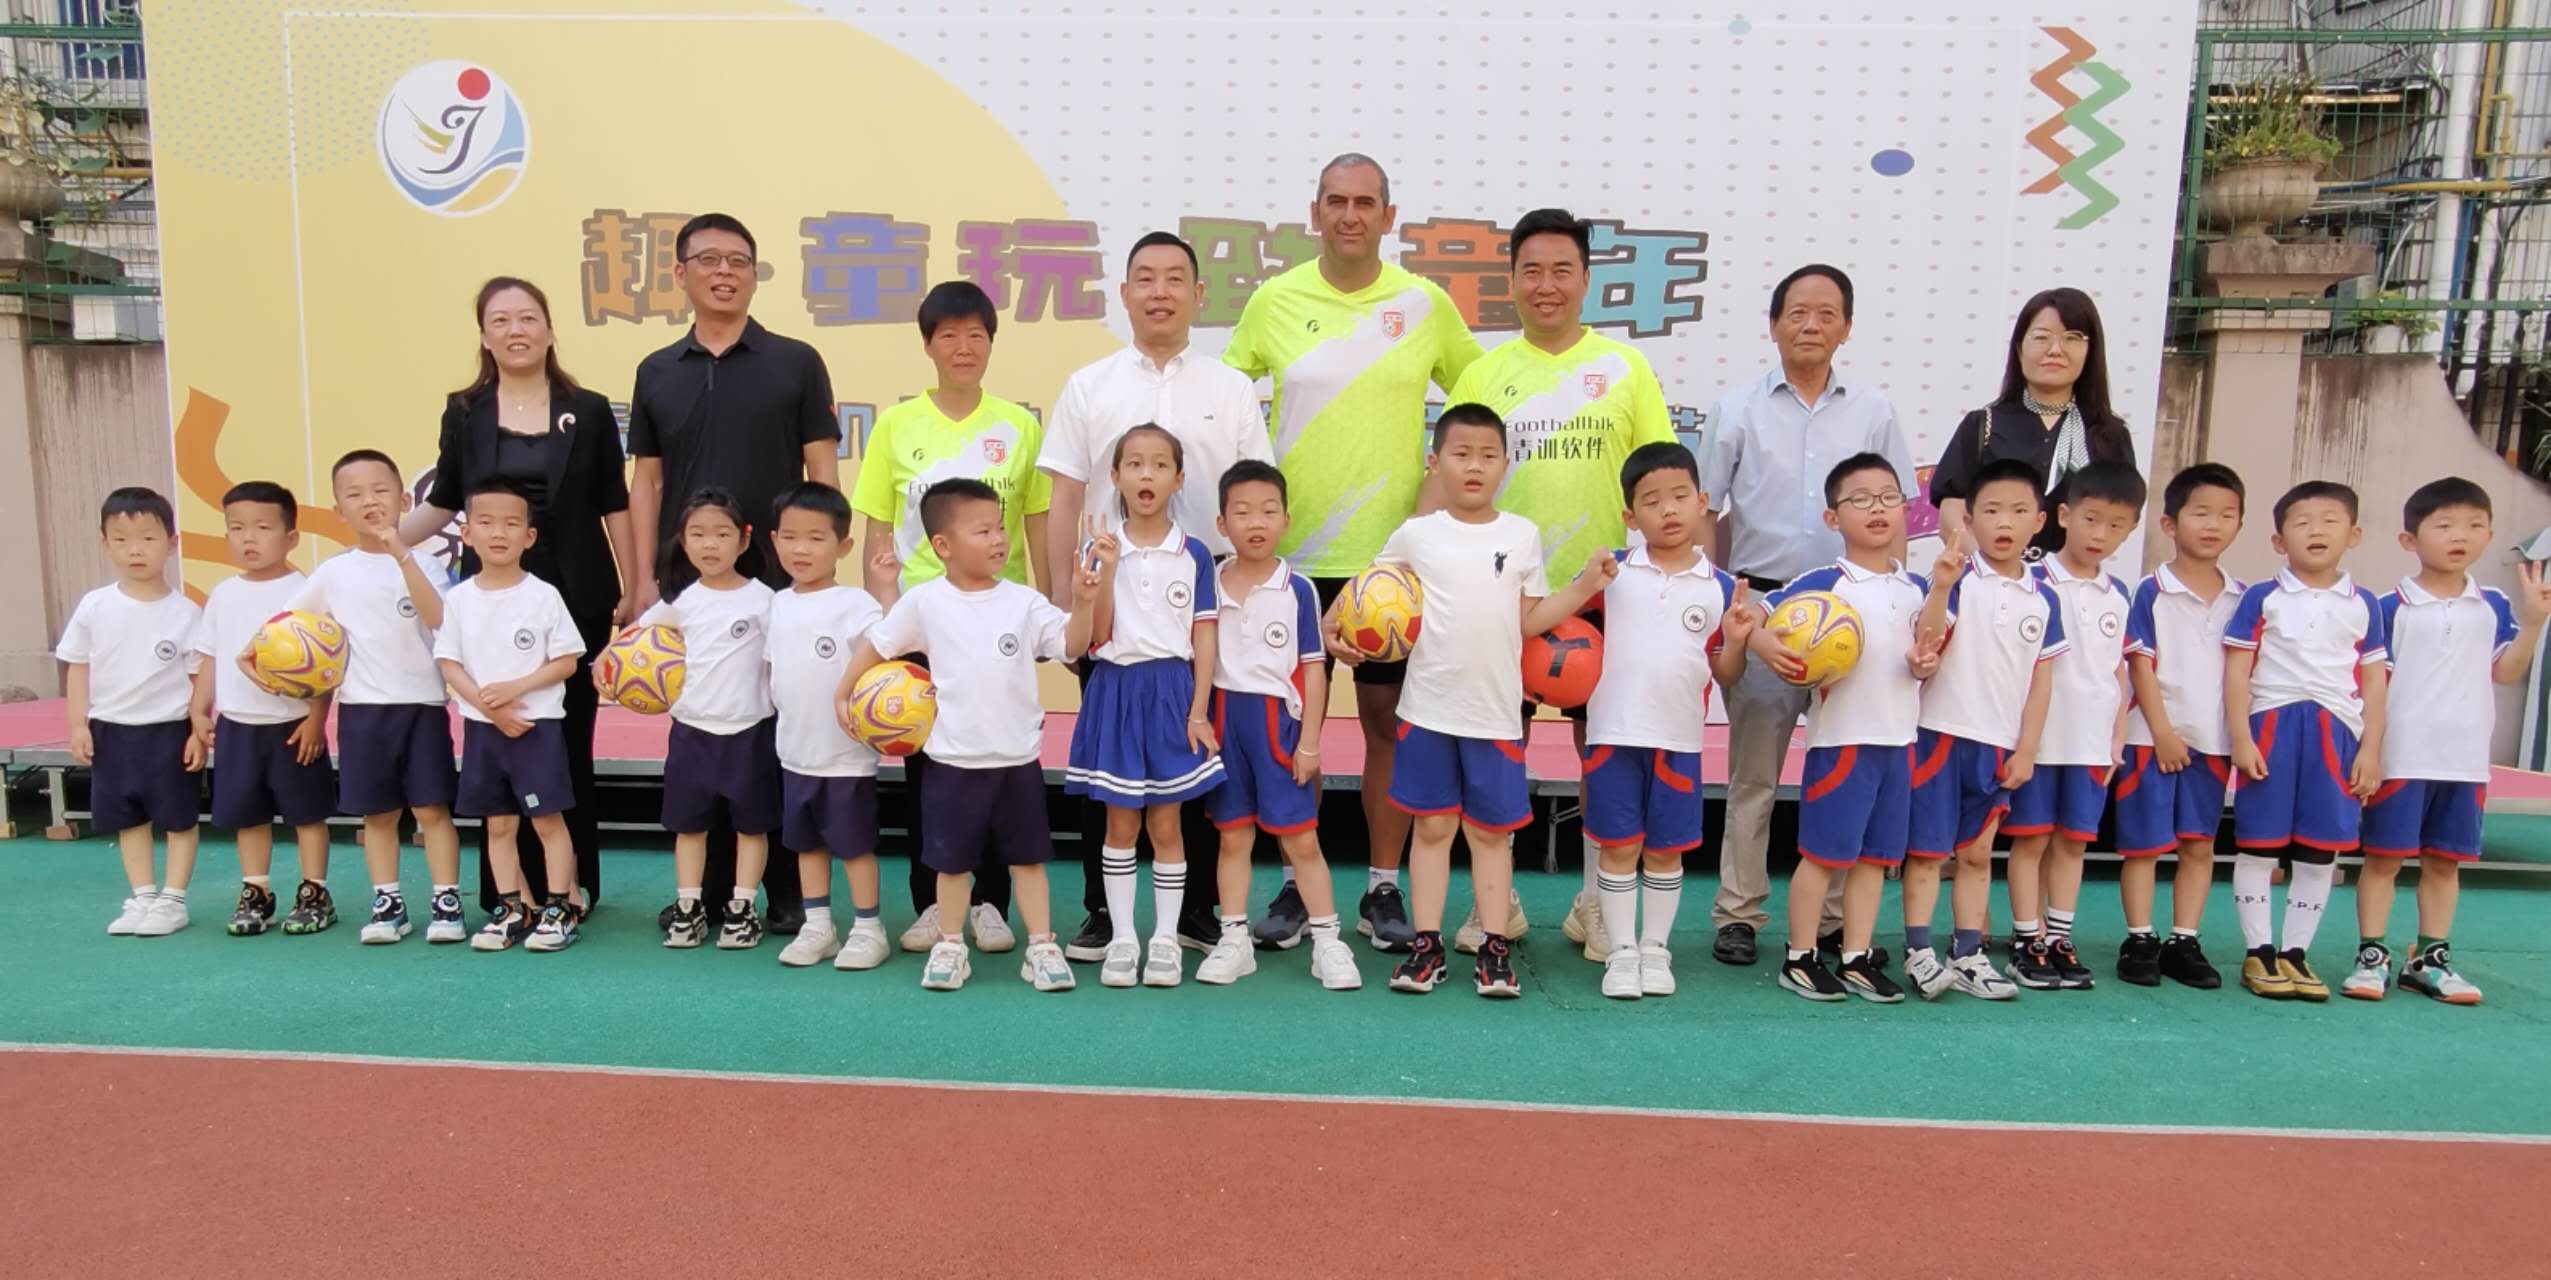 西班牙HLK足球俱乐部去青田机关幼儿园送足球互动活动